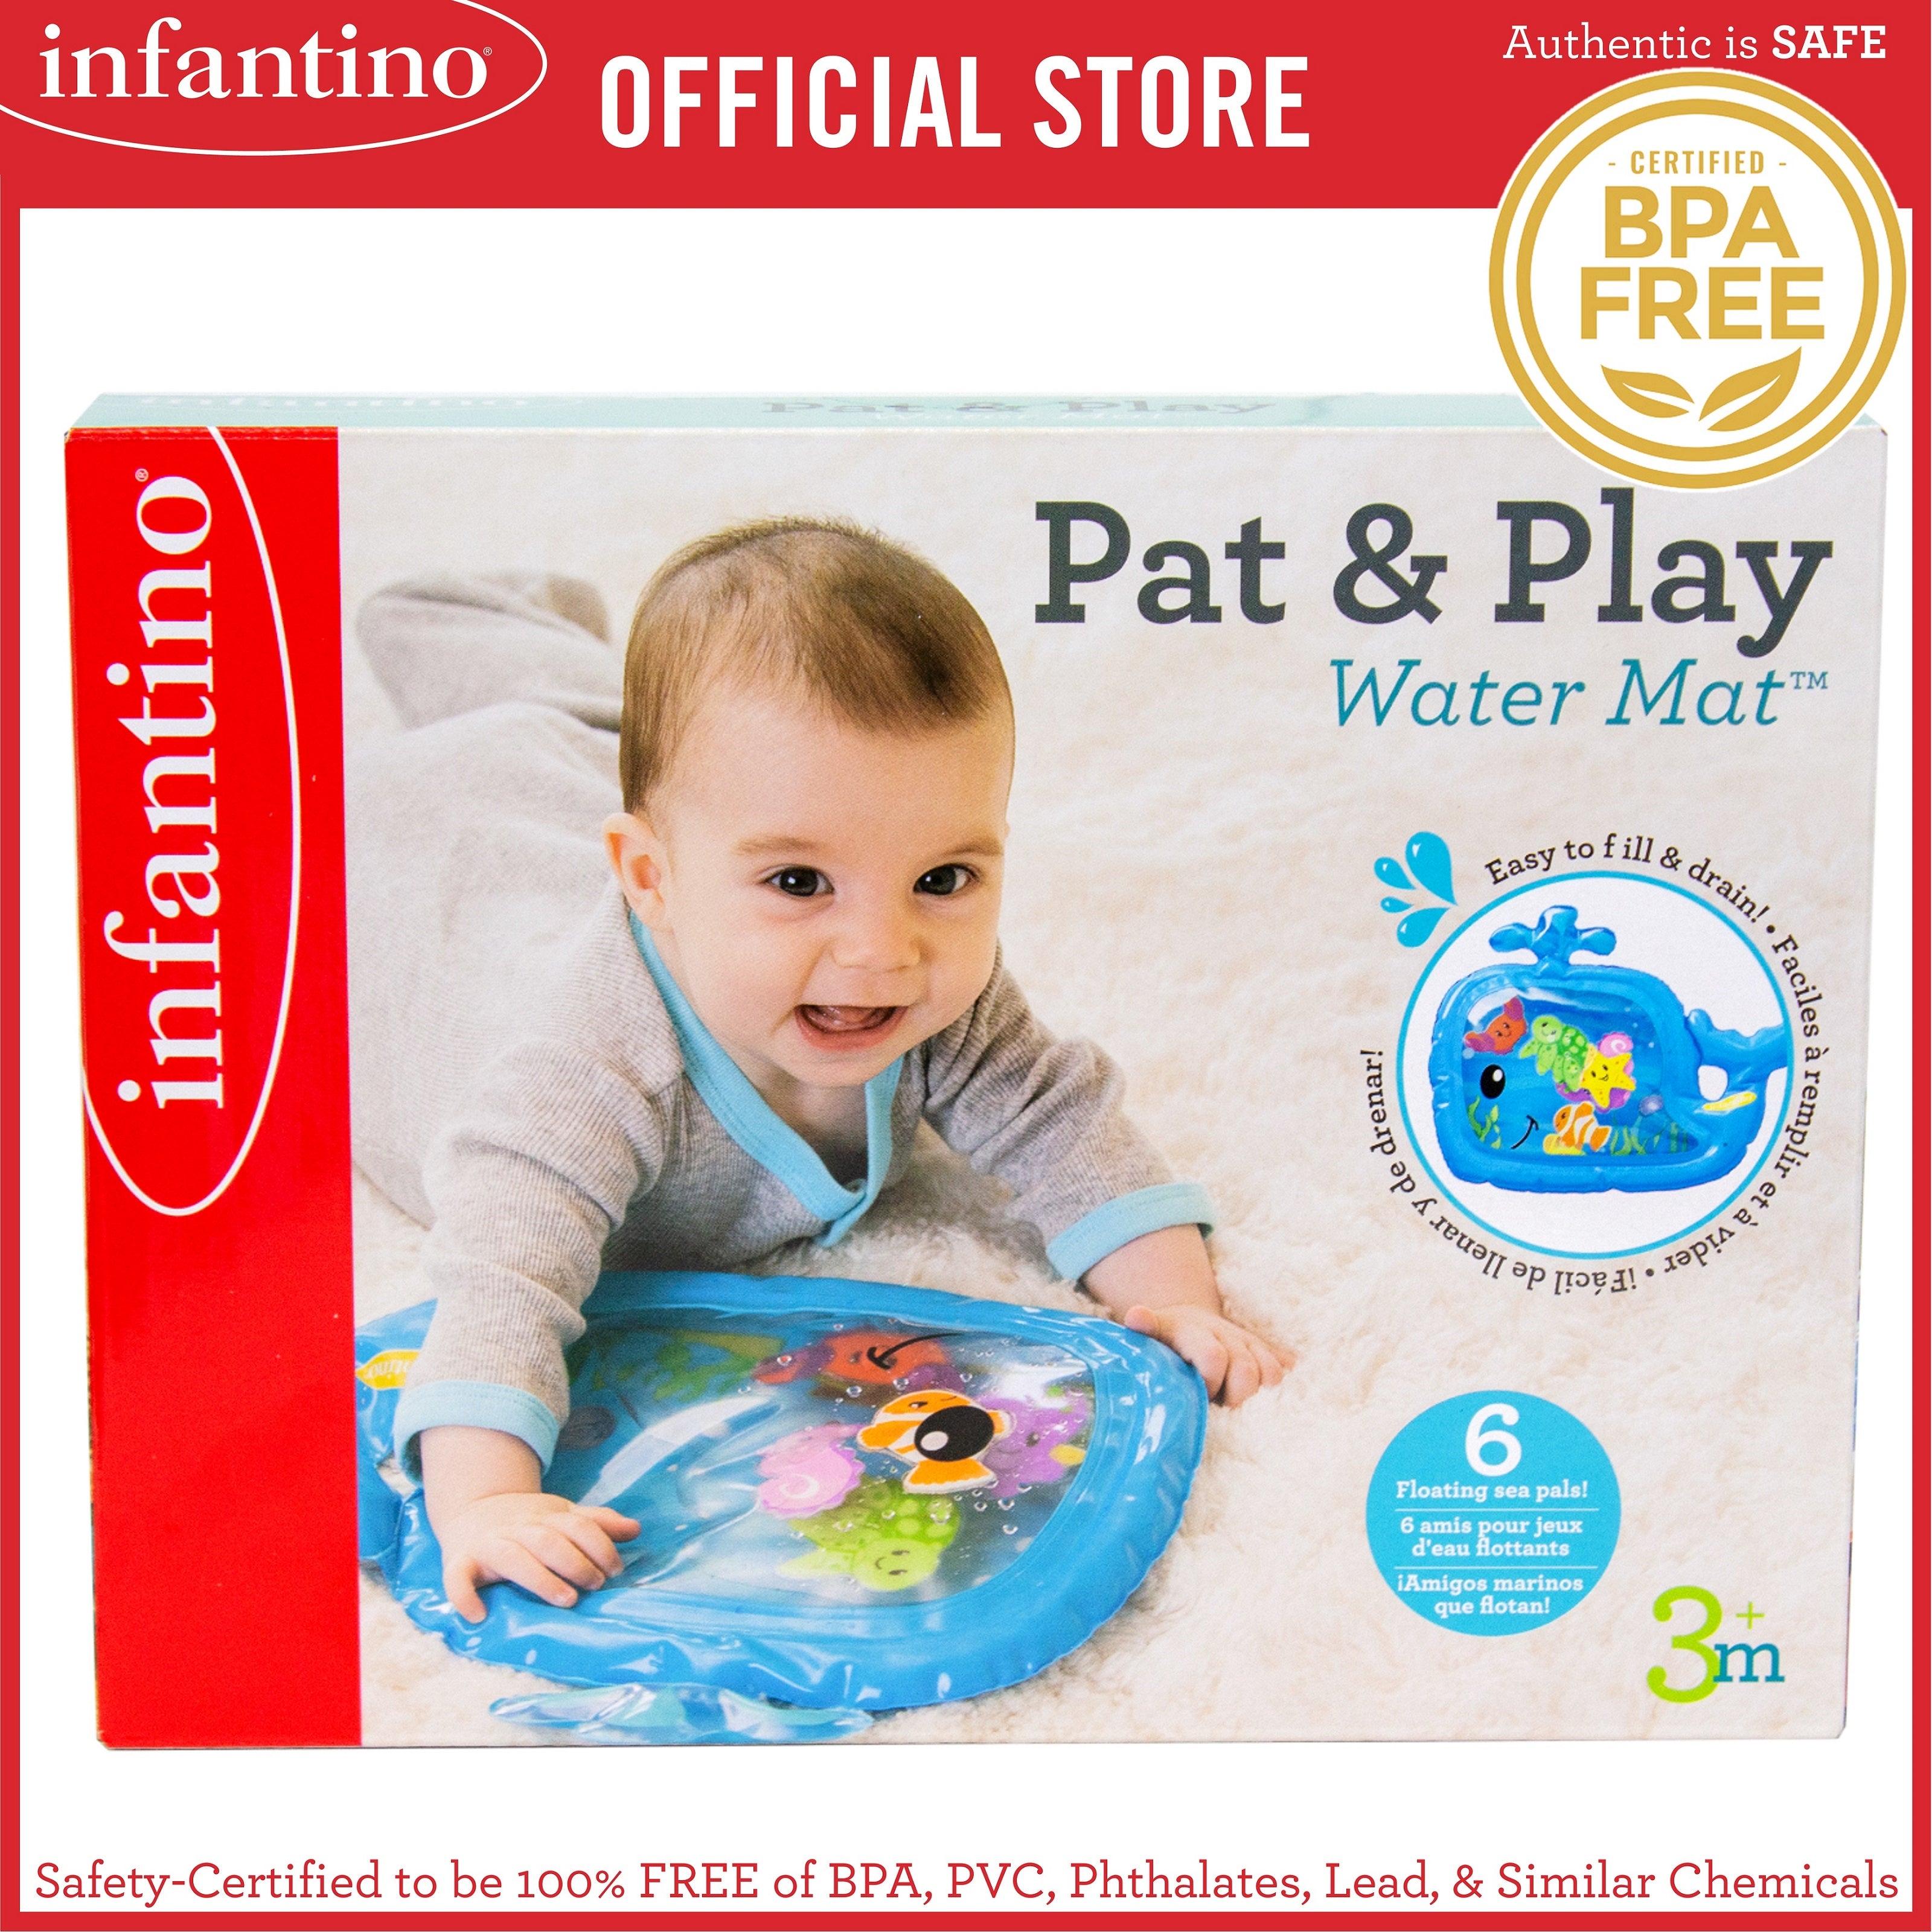 infantino pat and play water mat